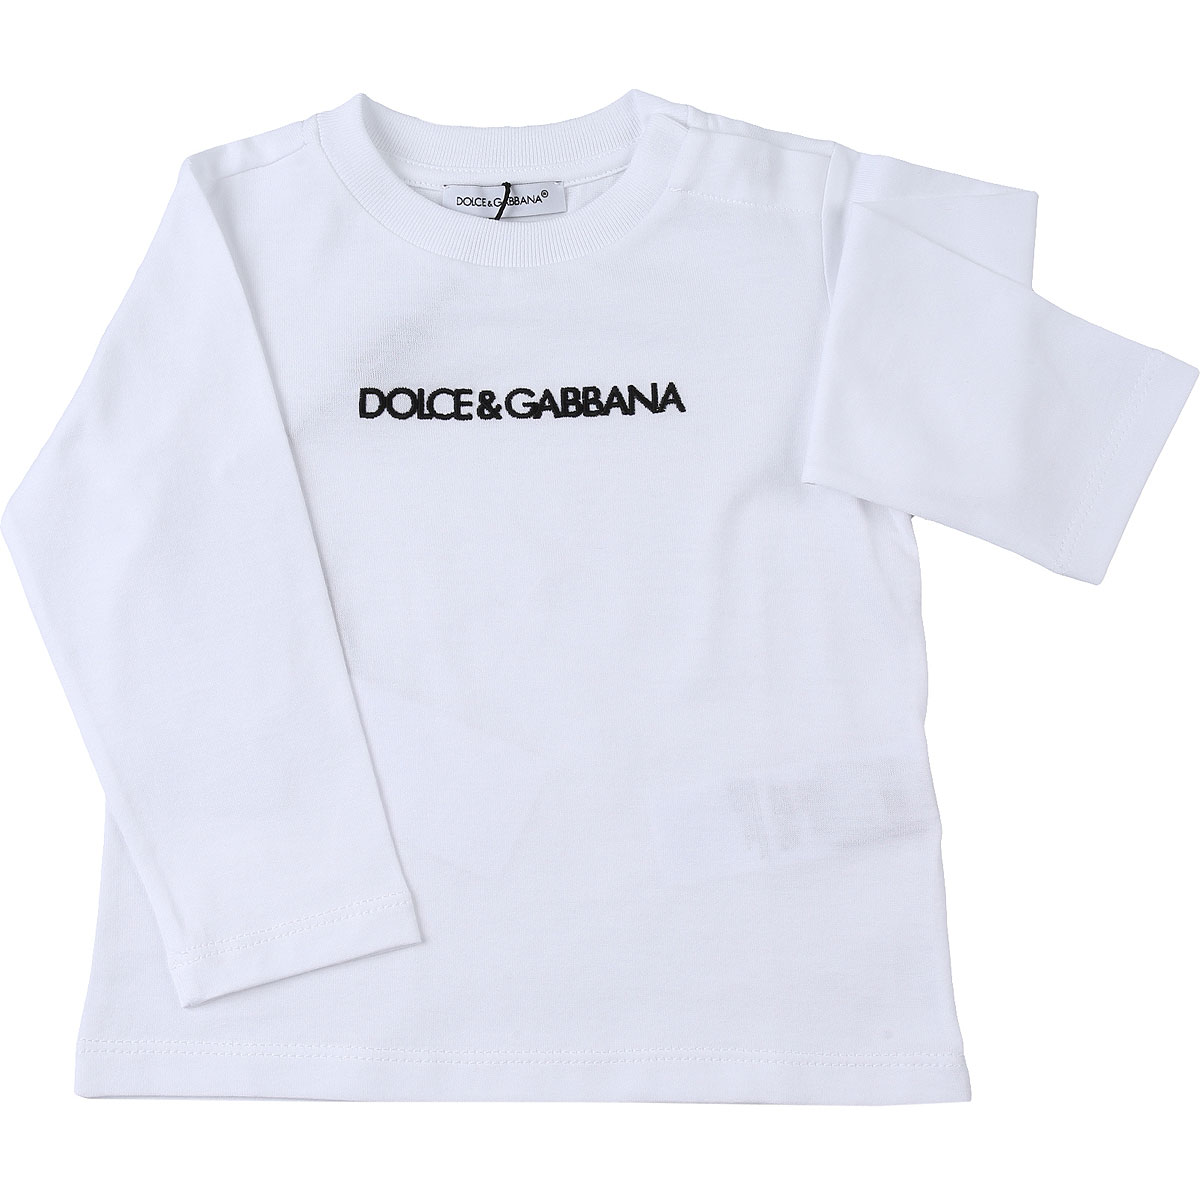 Dolce & Gabbana Baby T-Shirt für Jungen Günstig im Sale, Weiss, Baumwolle, 2017, 12 M 18M 24M 30M 9M